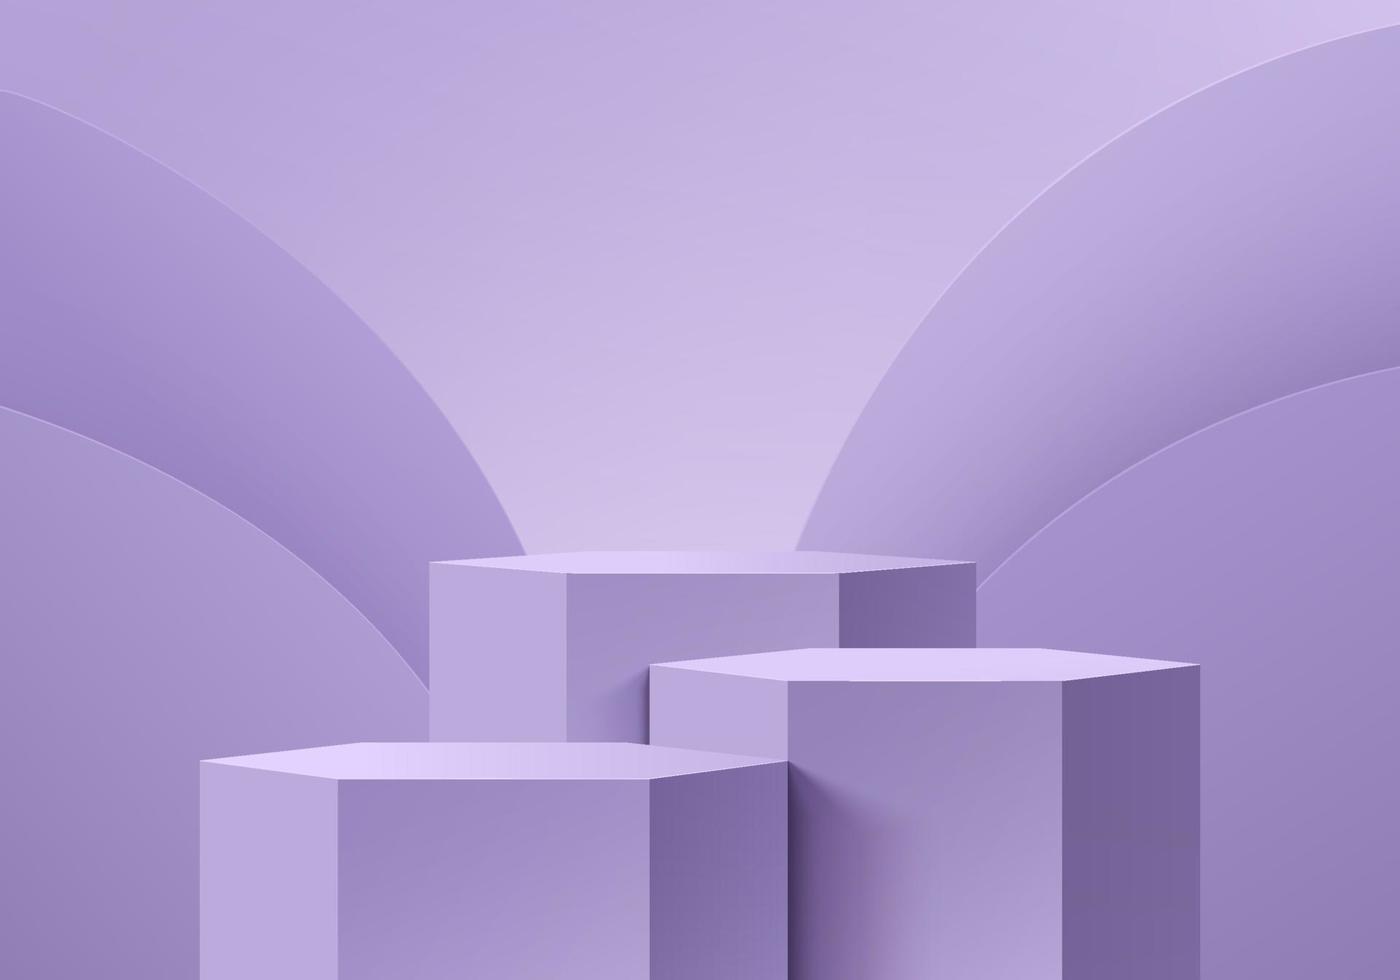 soporte hexagonal 3d púrpura realista o conjunto de podio con fondo de capas de forma de curva redonda. escena mínima pastel para exhibición de productos, exhibición de promoción. plataforma de sala de estudio abstracto vectorial. vector